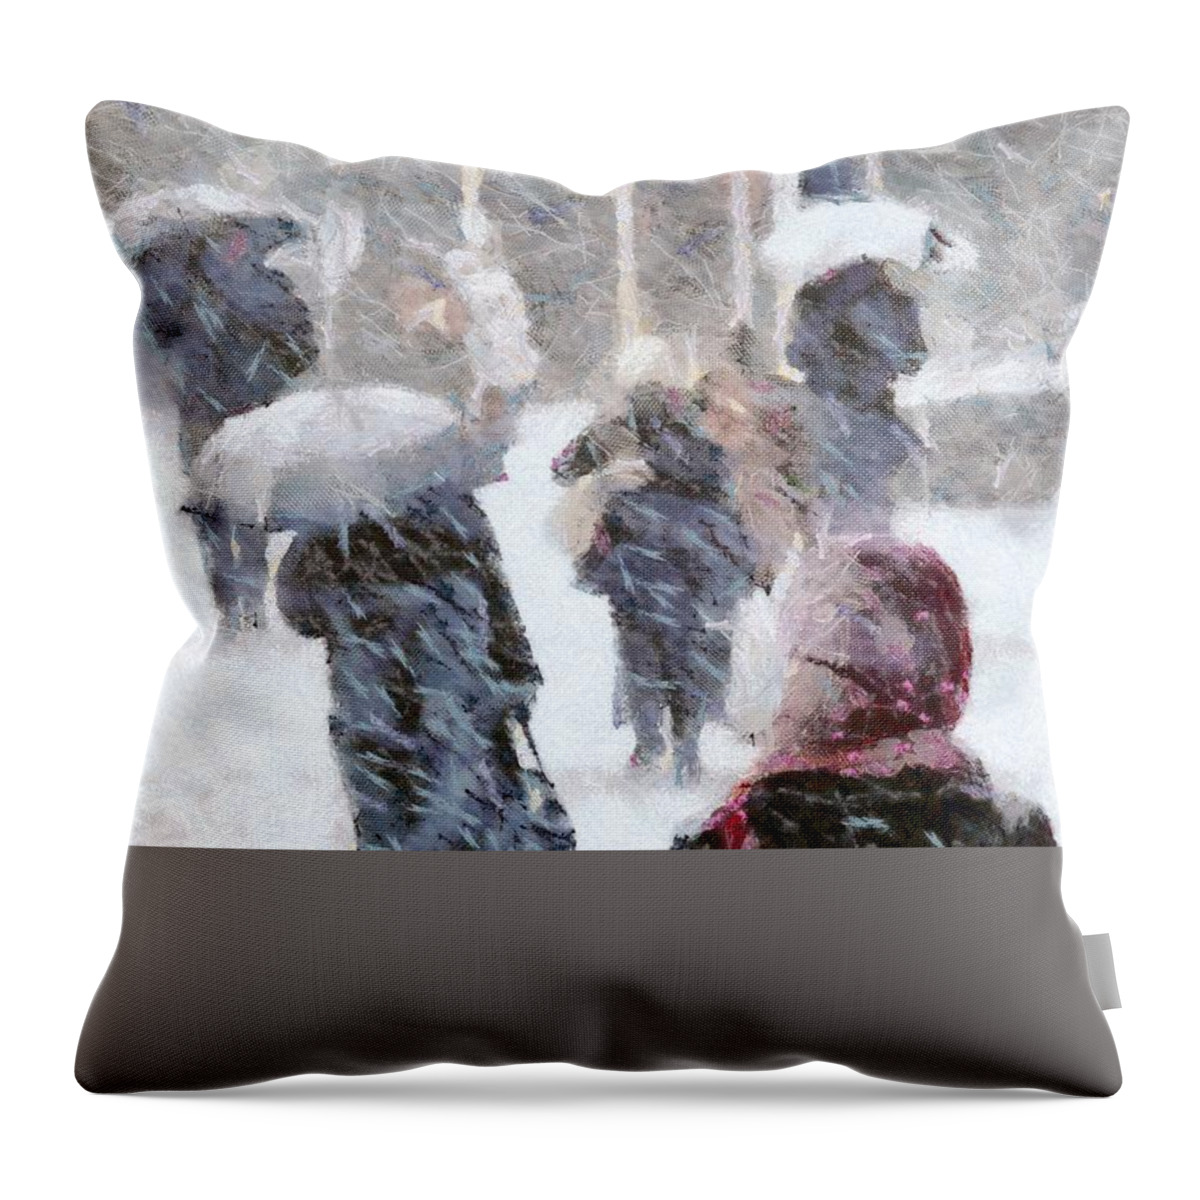 Nature Throw Pillow featuring the digital art First snow #3 by Gun Legler